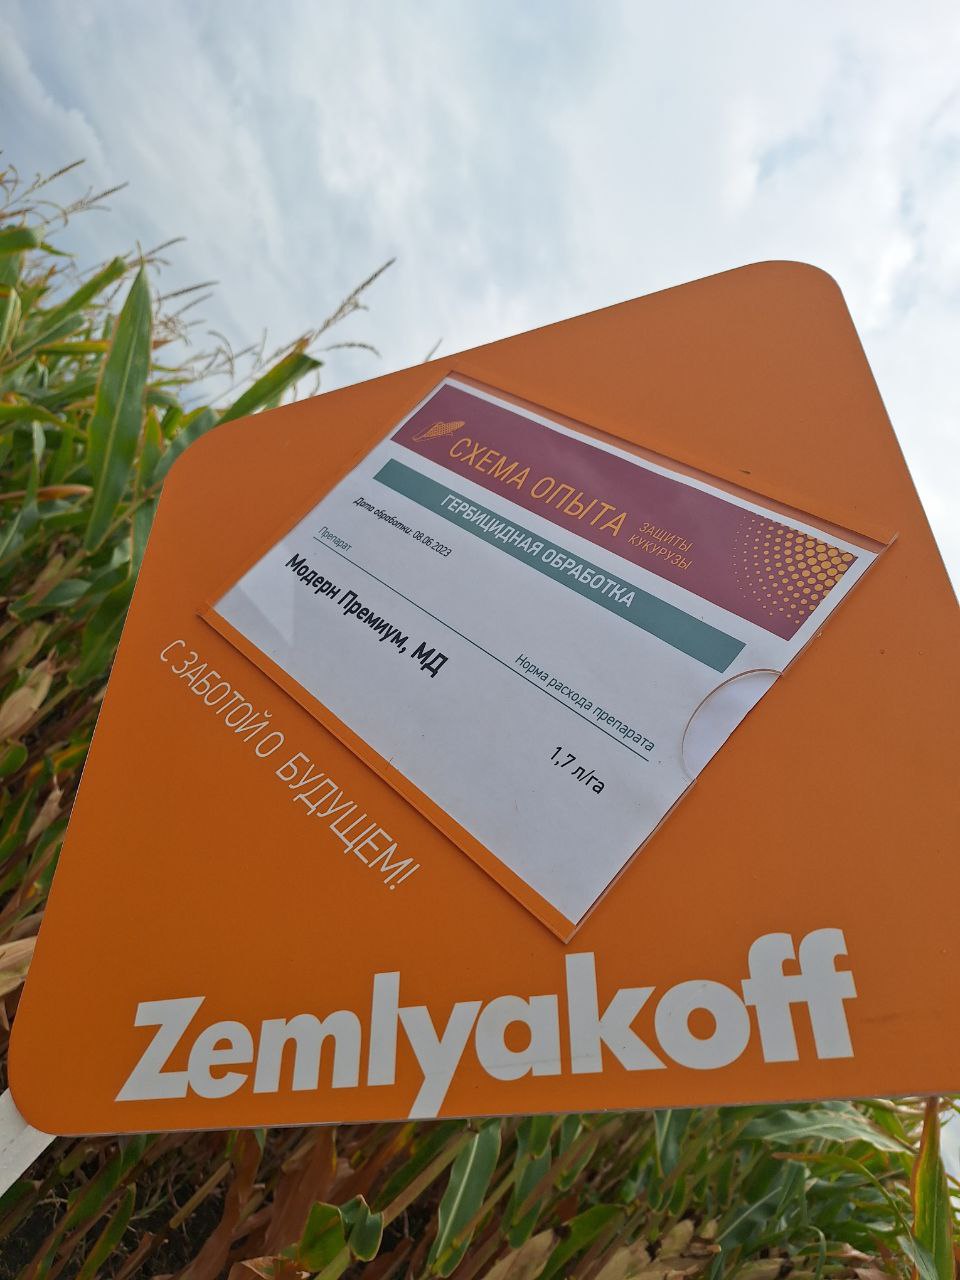 На "Поле Звёзд" представили демопосевы подсолнечника и кукурузы LG, обработанные препаратами ZemlyakoFF